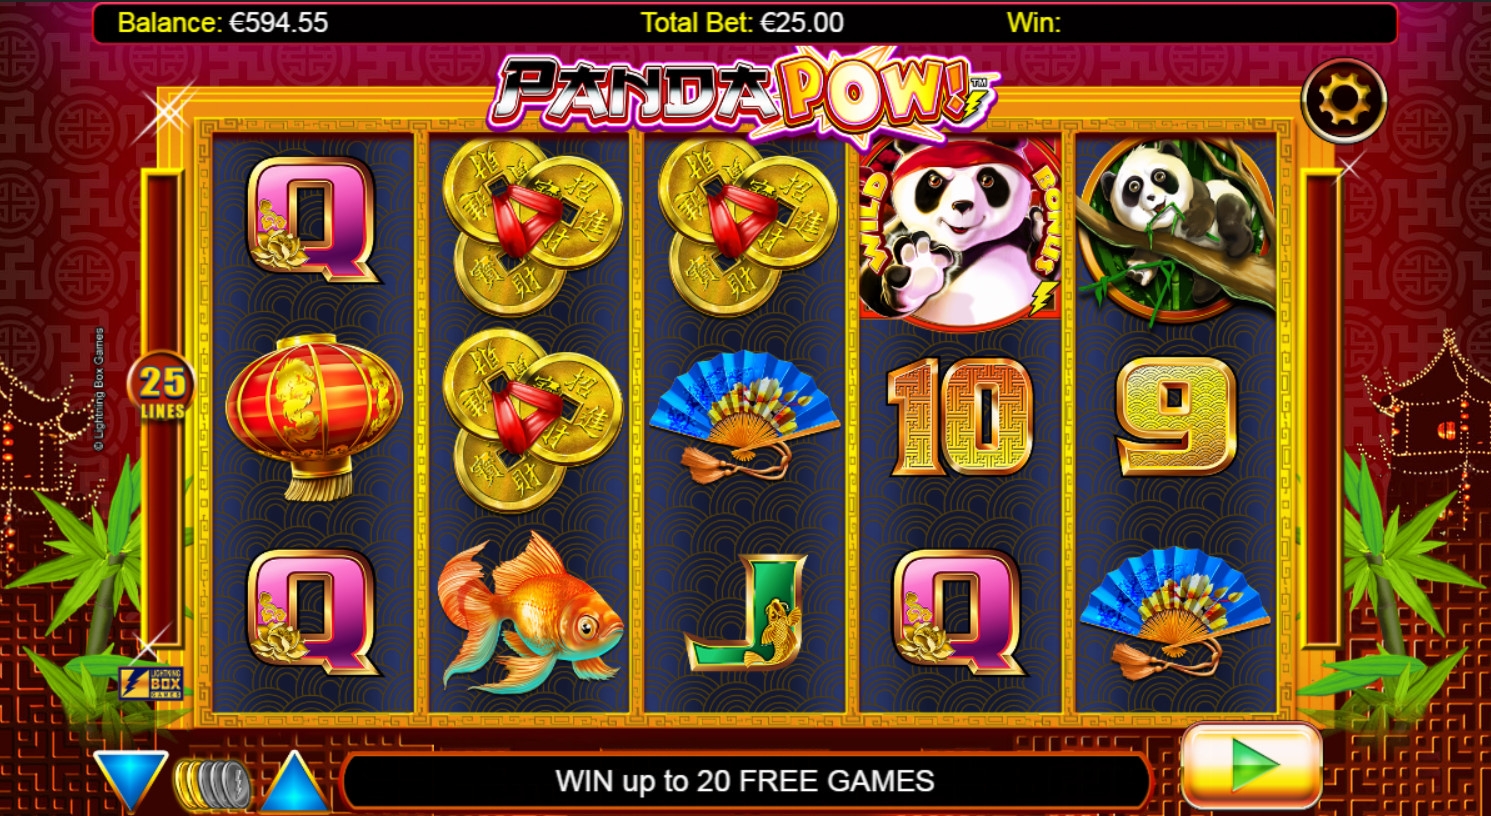 Panda Pow! (Panda Pow) from category Slots